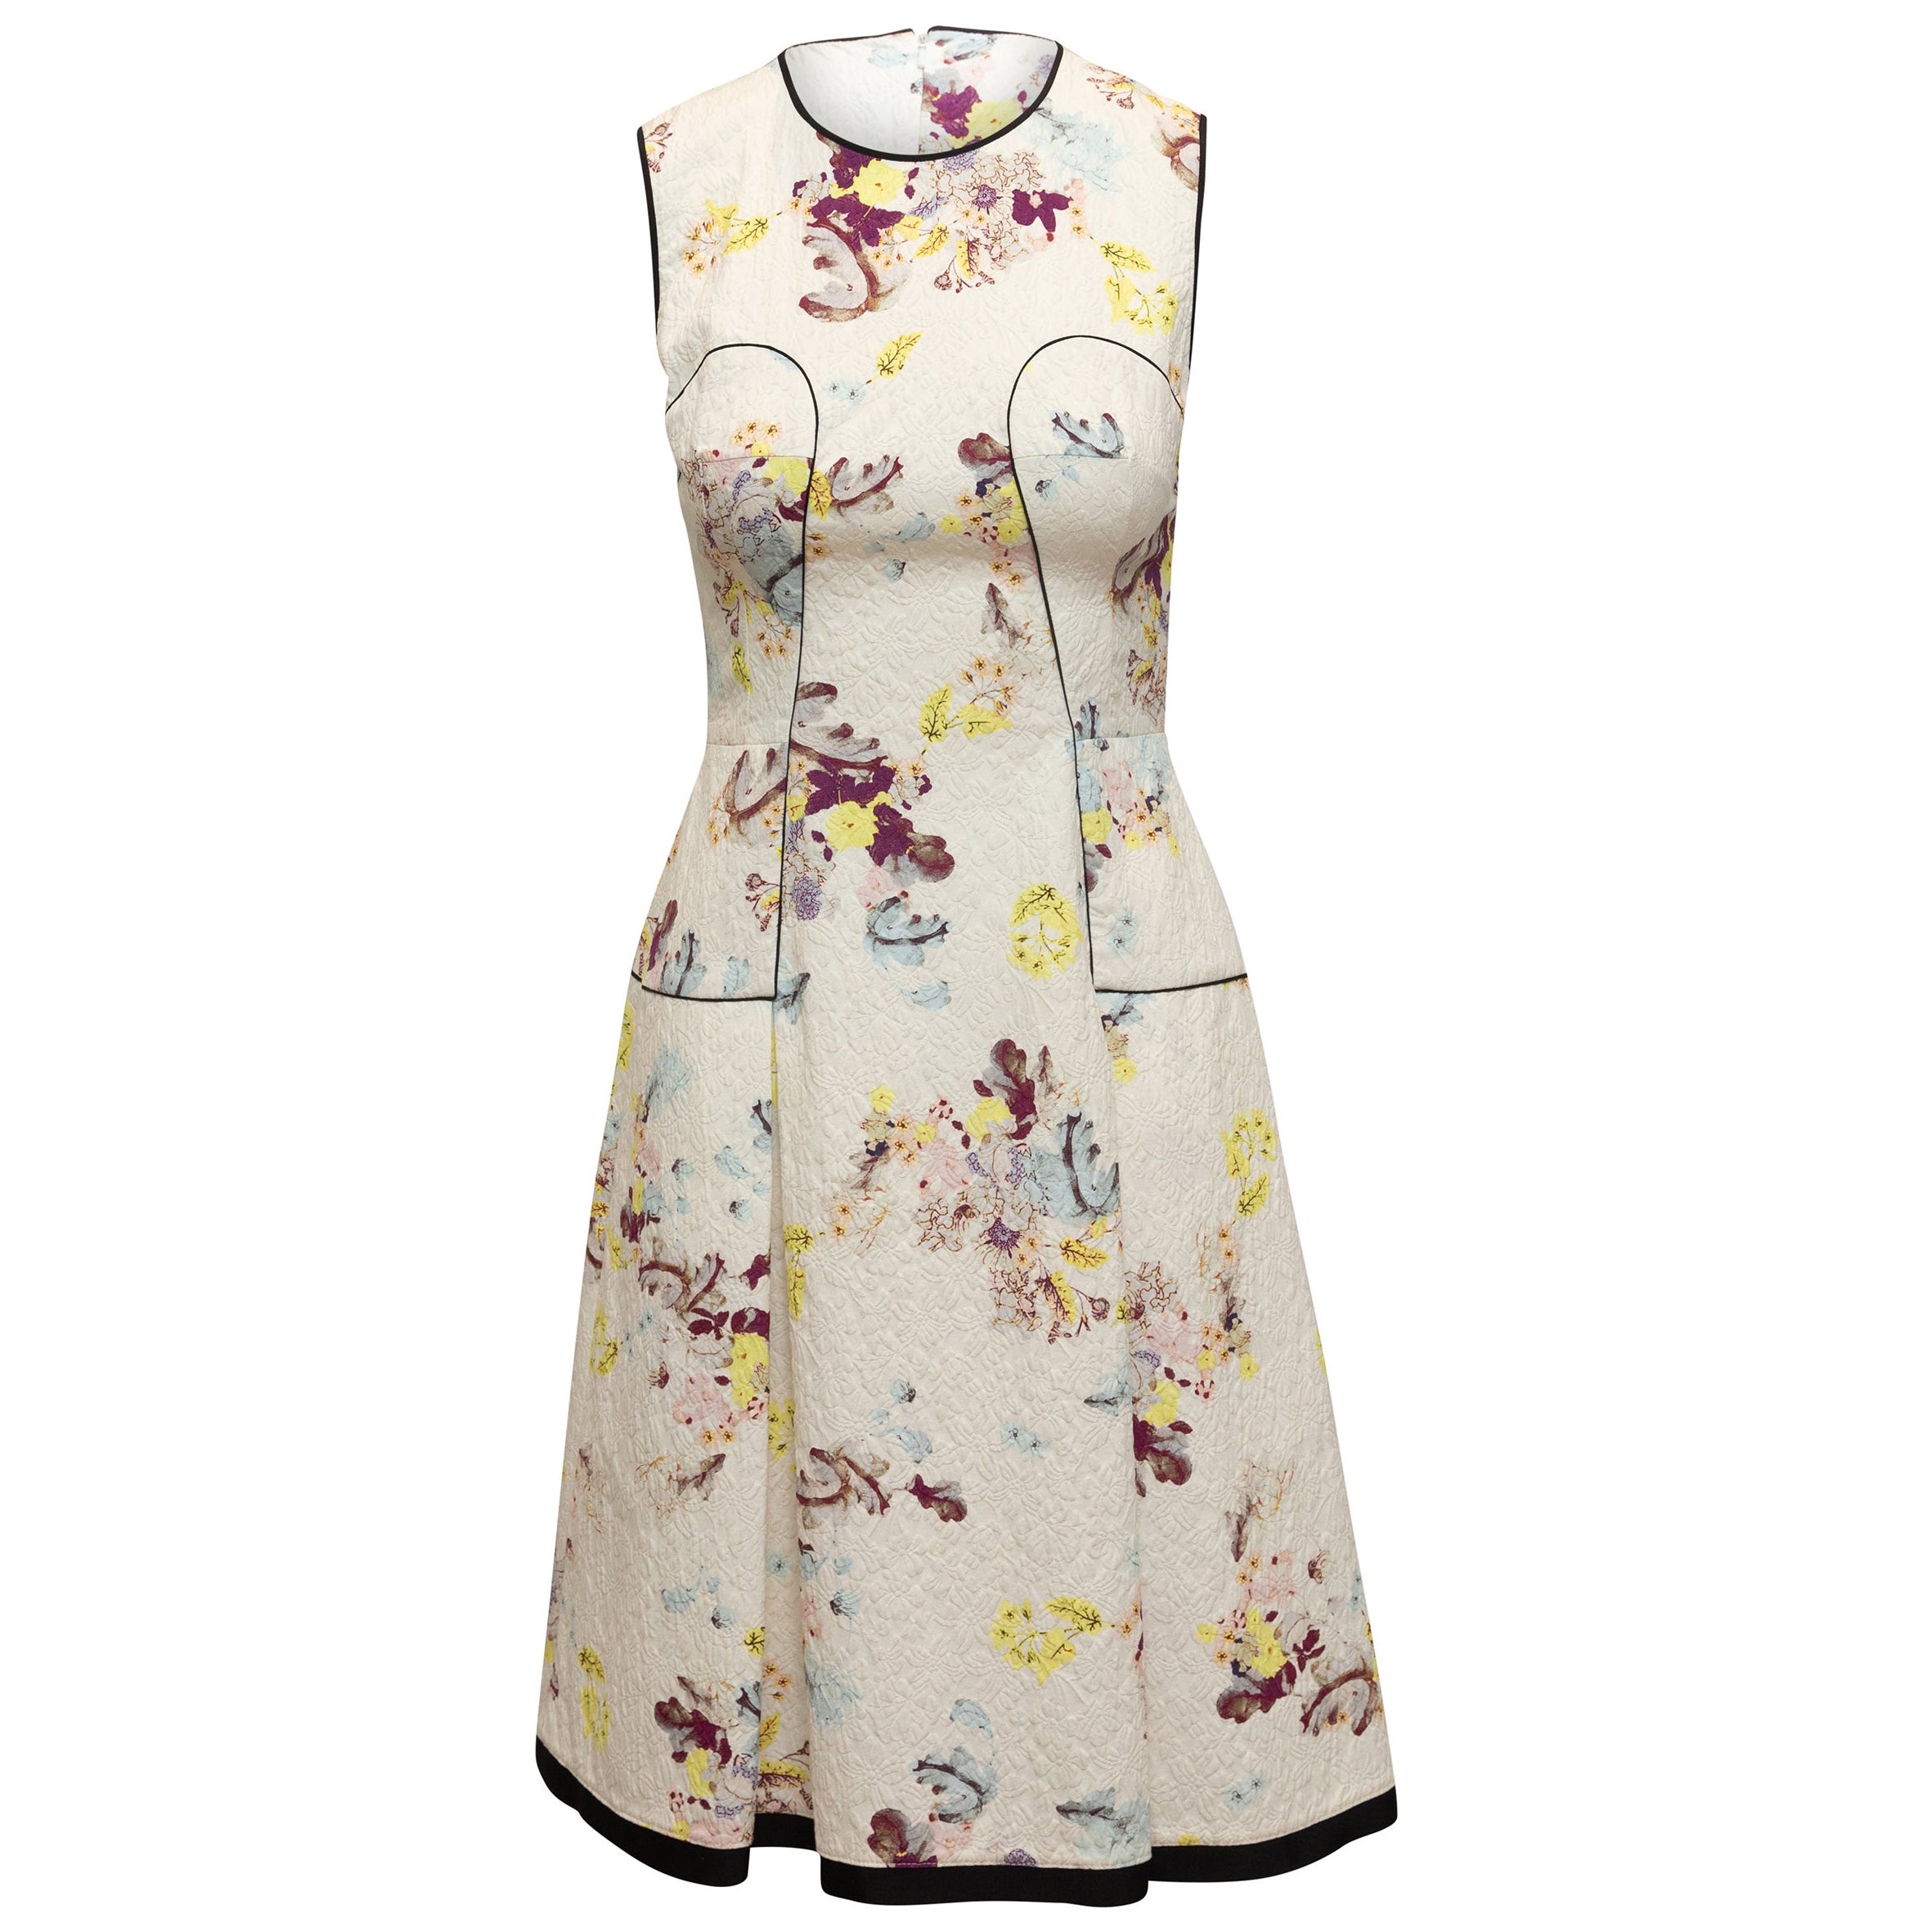 Erdem White & Multicolor Floral Print Sleeveless Dress